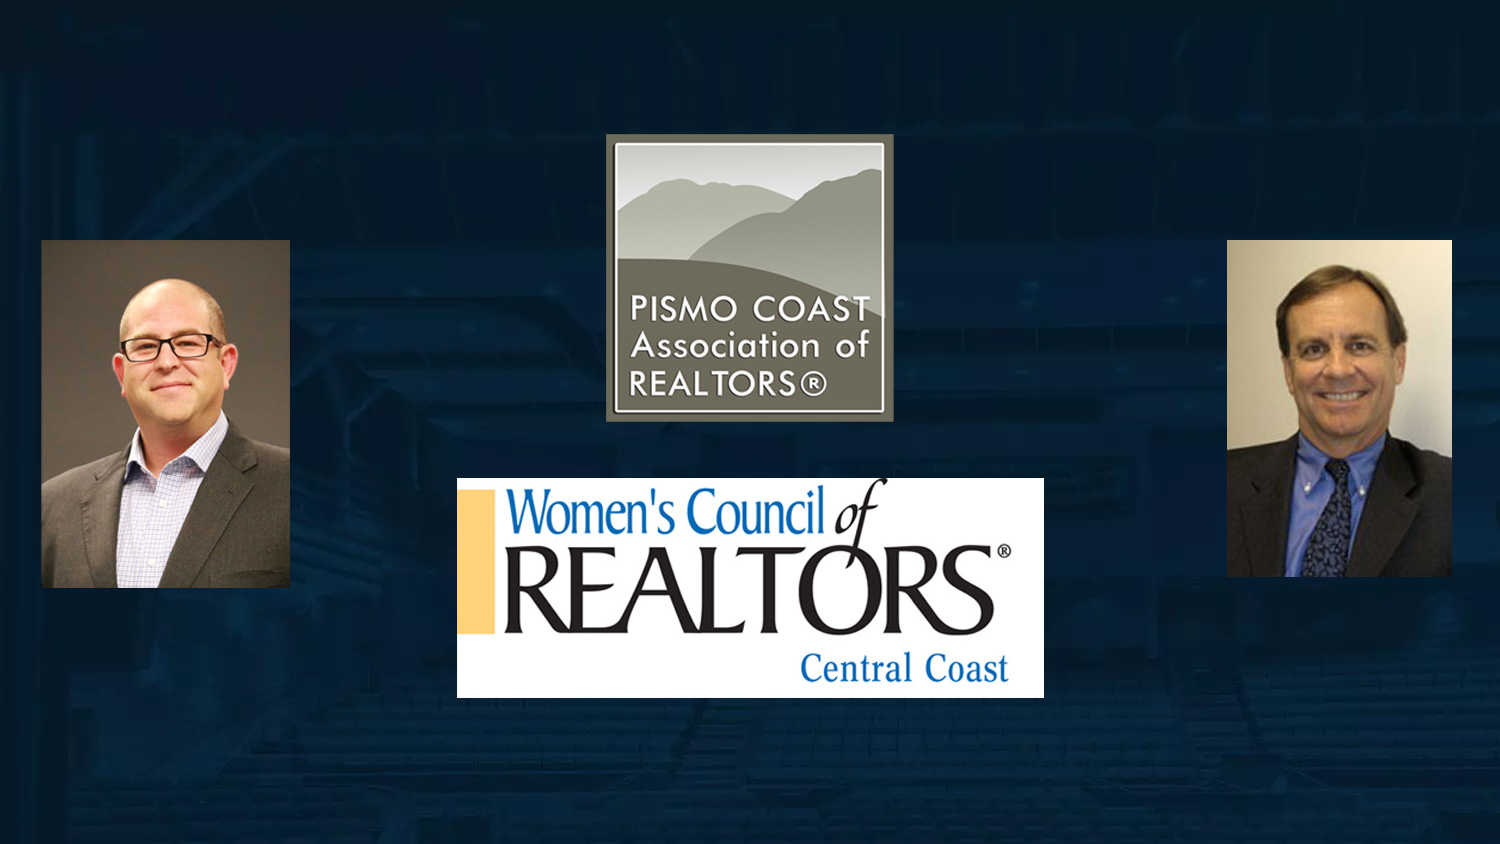 Pismo Coast Association of Realtors and Women's Council of Realtors Central Coast